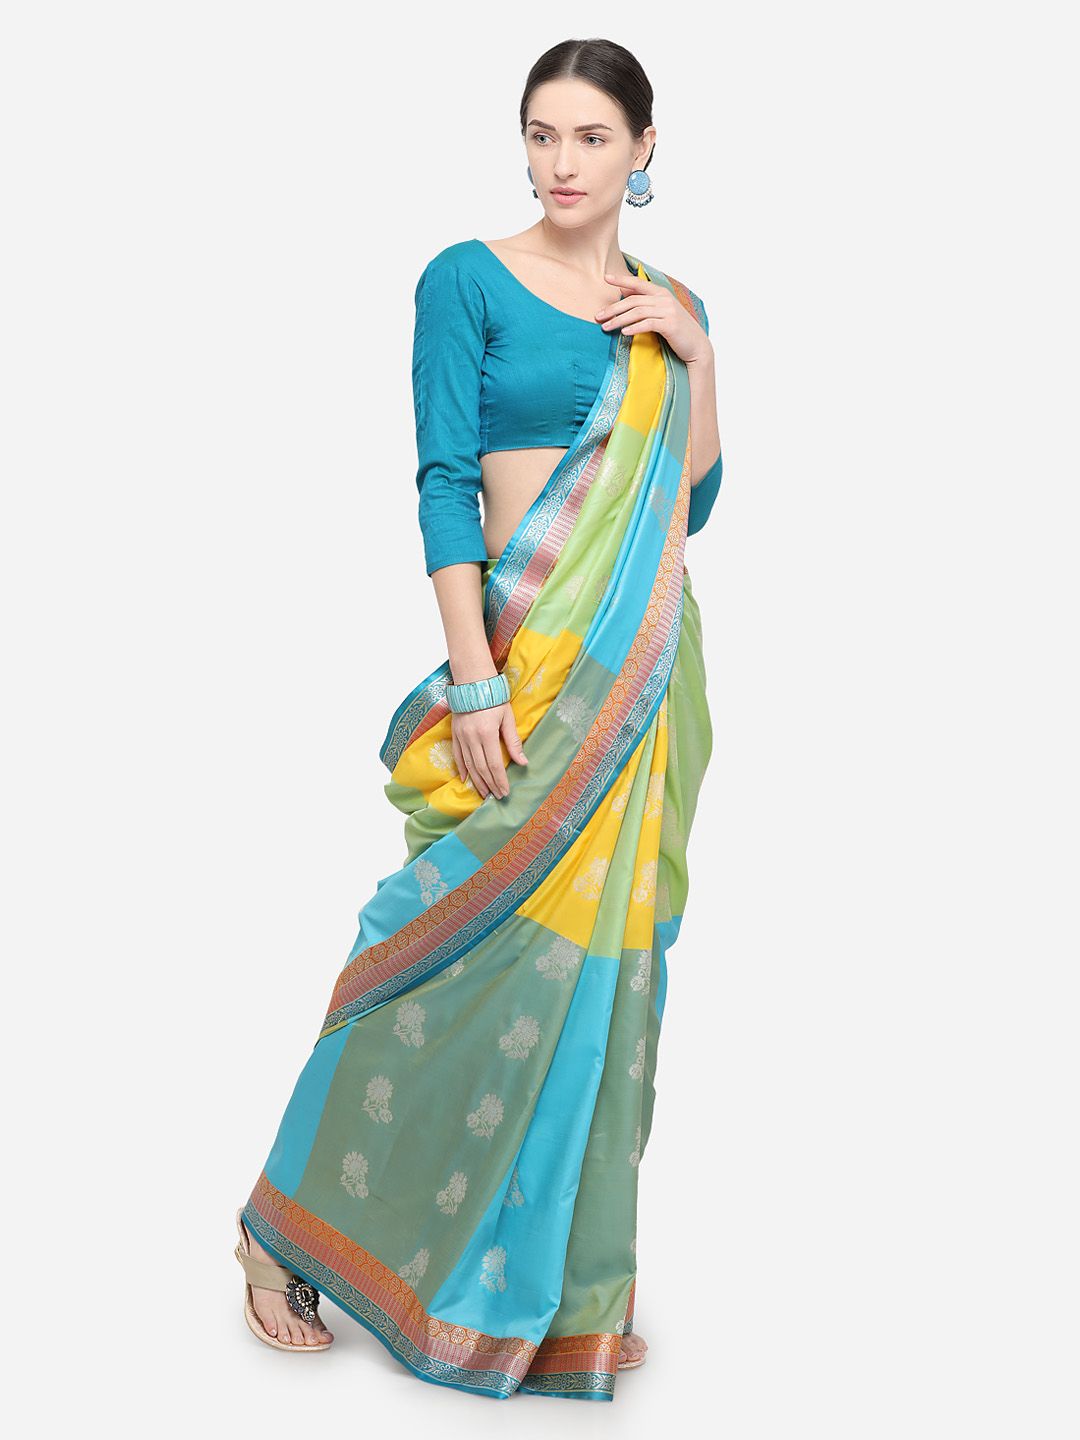 Varkala Silk Sarees Turquoise Blue & Yellow Silk Blend Woven Design Banarasi Saree Price in India